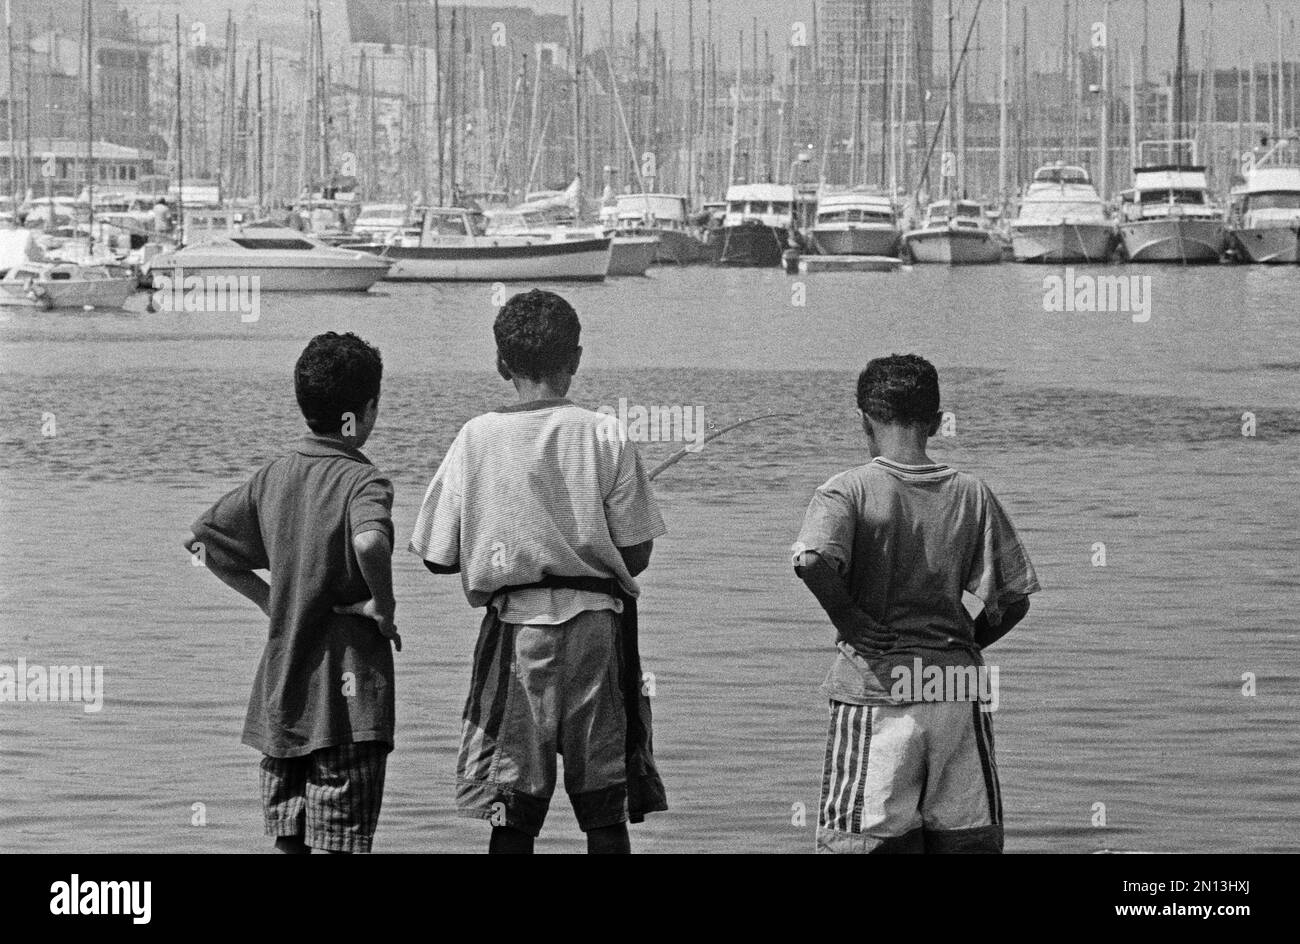 Boys fishing, Old Port, Marseille, 28. 08. 91, Département Bouches-du-Rhône, Region Provence-Alpes-Côte d'Azur, France, Europe Stock Photo